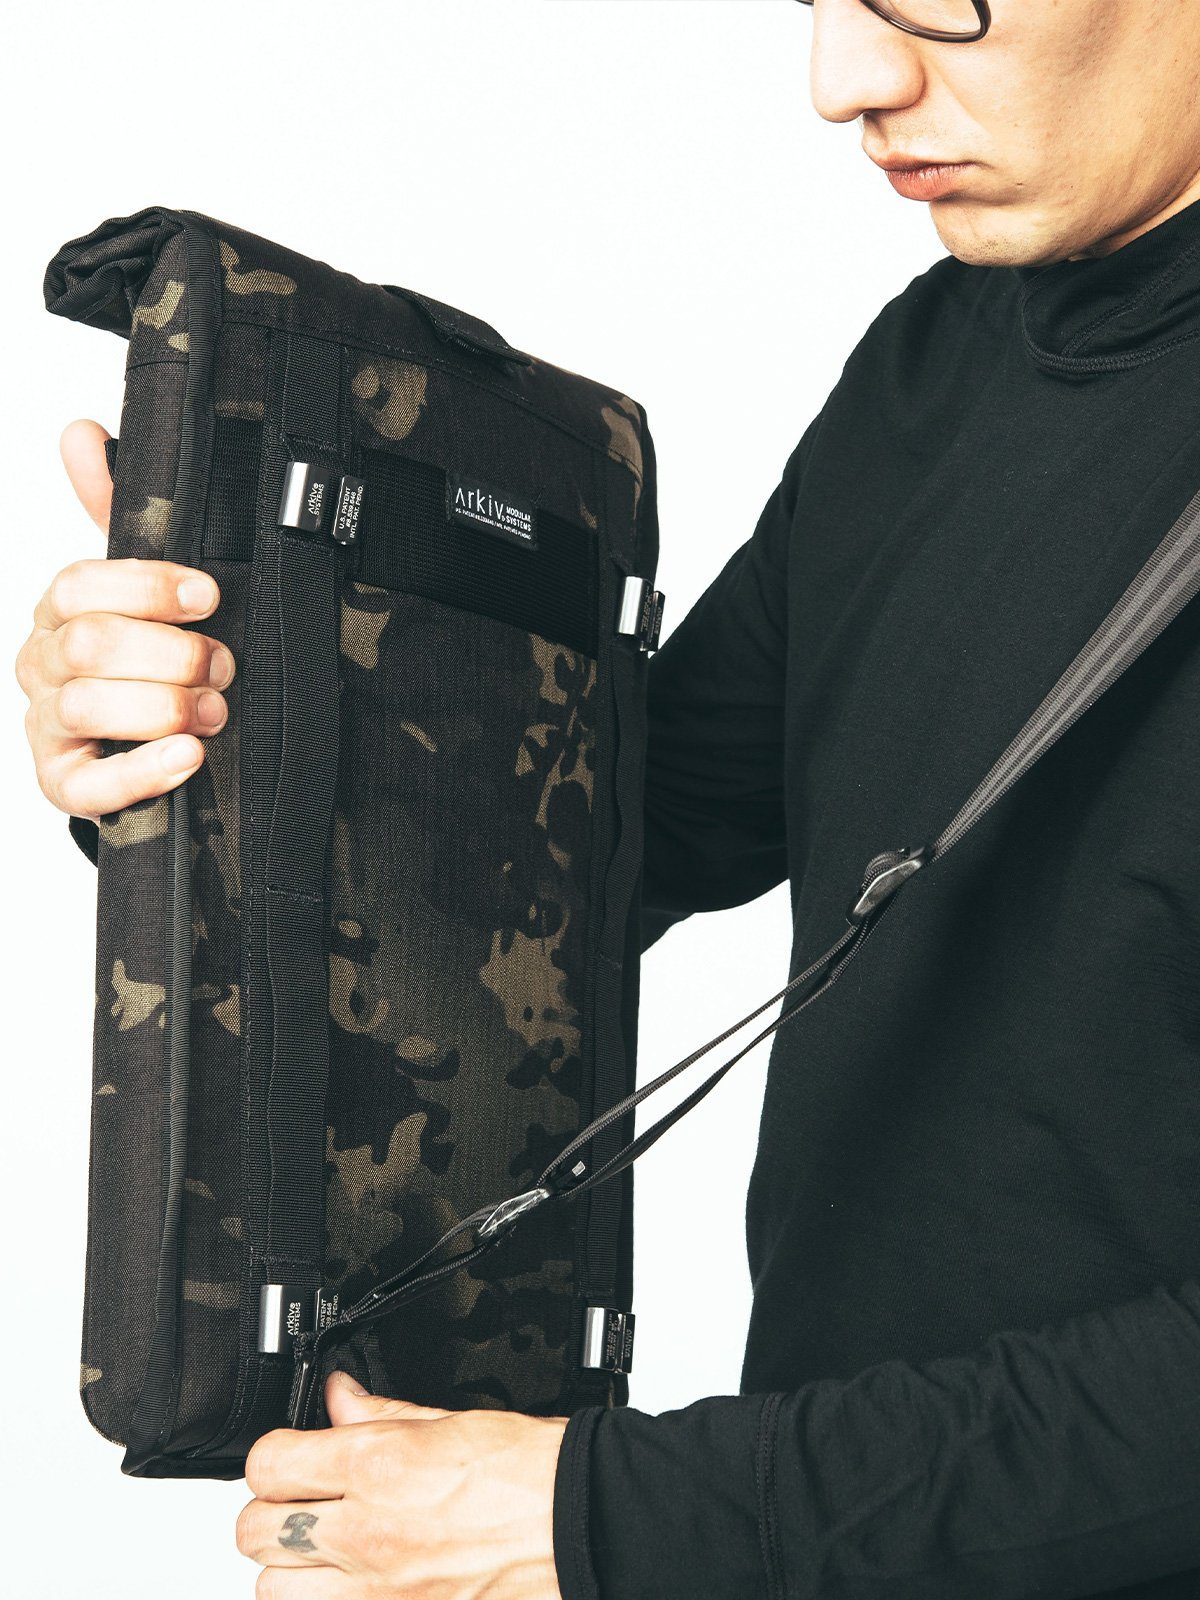 Arkiv Shoulder Strap by Mission Workshop - Weatherproof Bags & Technical Apparel - San Francisco & Los Angeles - Construit pour durer - Garanti pour toujours